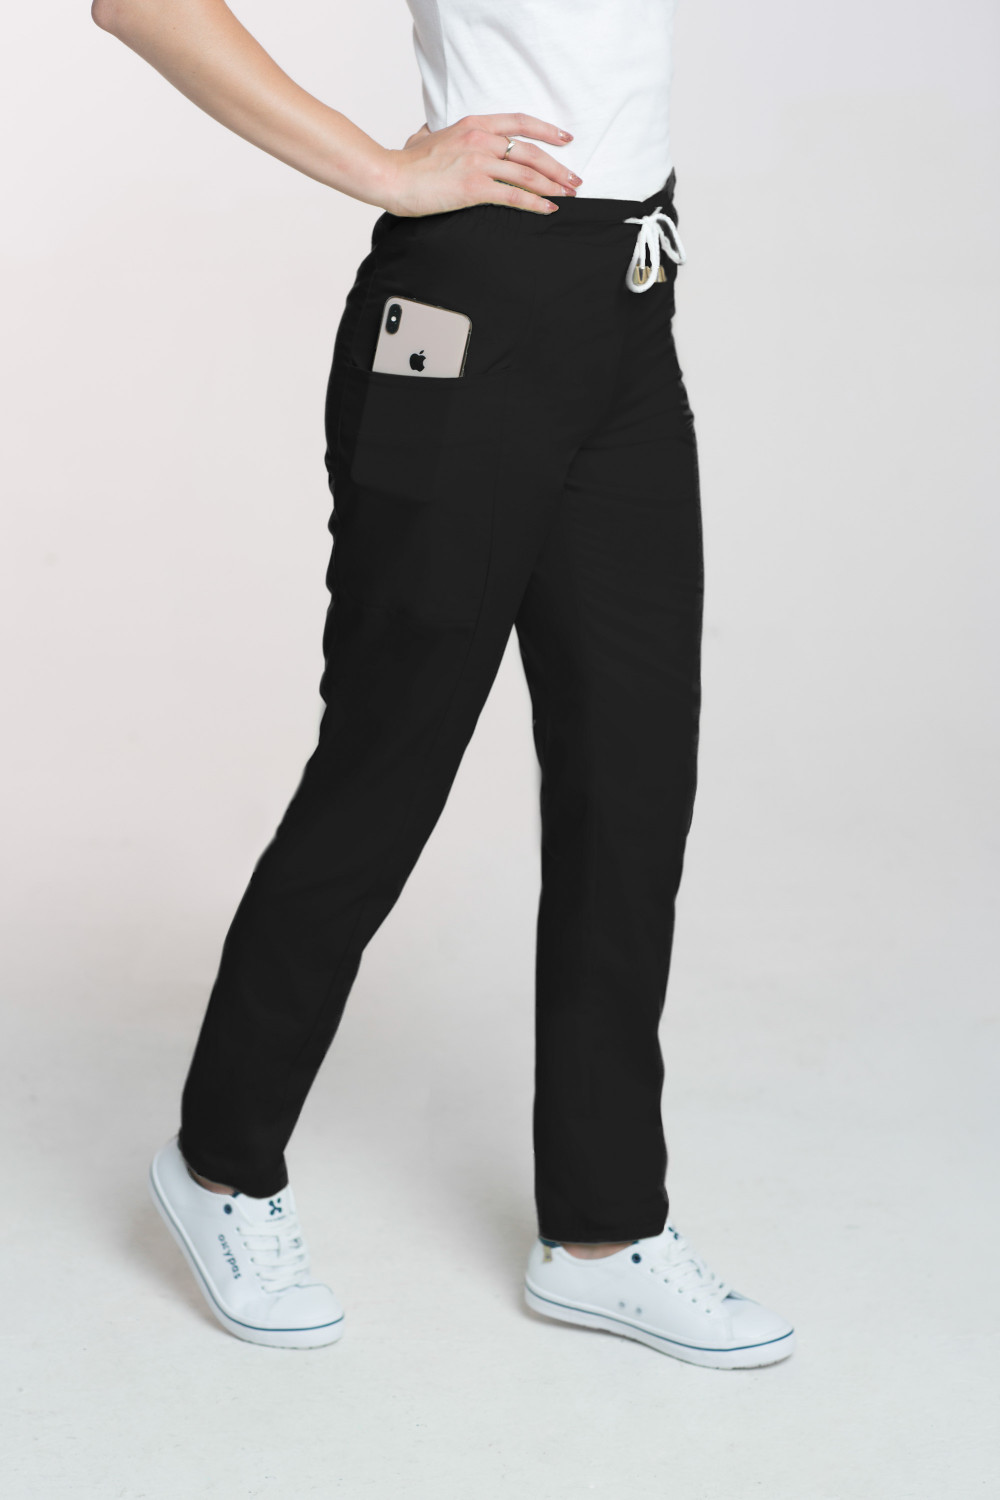 M-200X Elastyczne spodnie damskie medyczne kosmetyczne na sznurku czarny